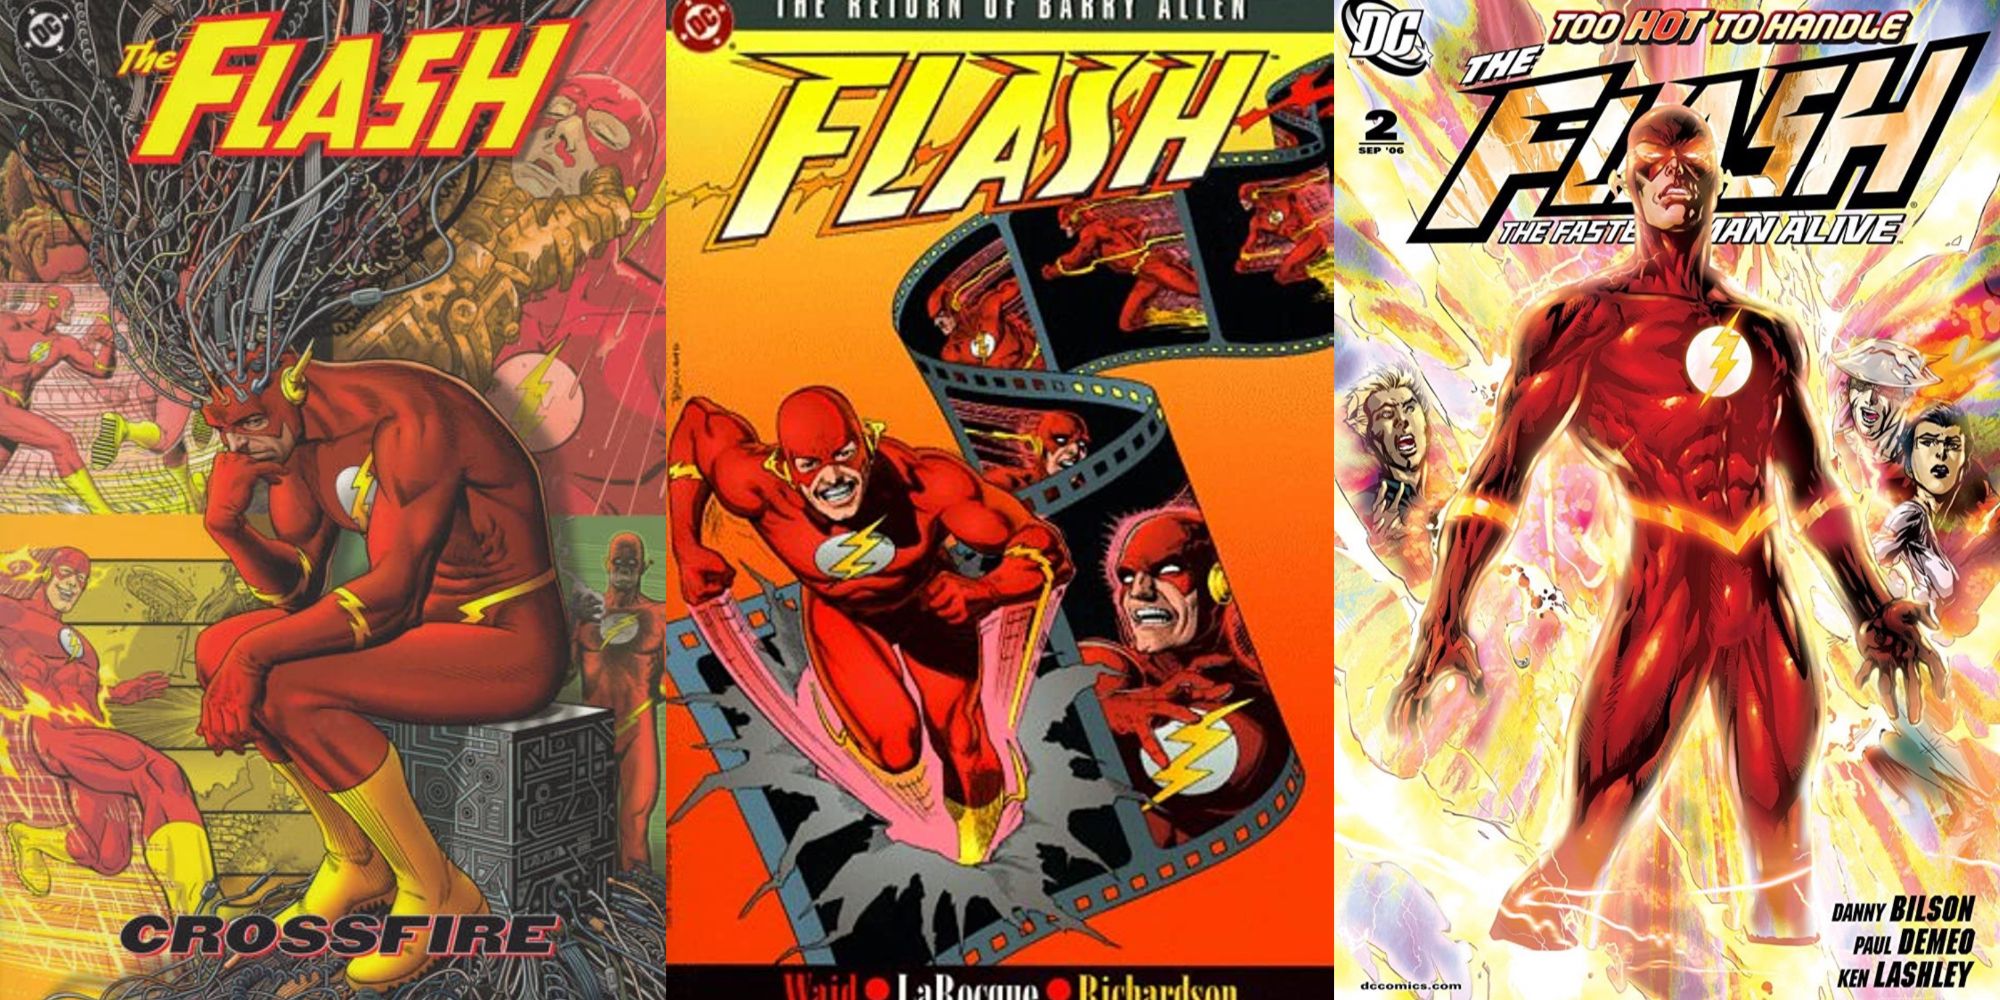 Underrated Flash comics